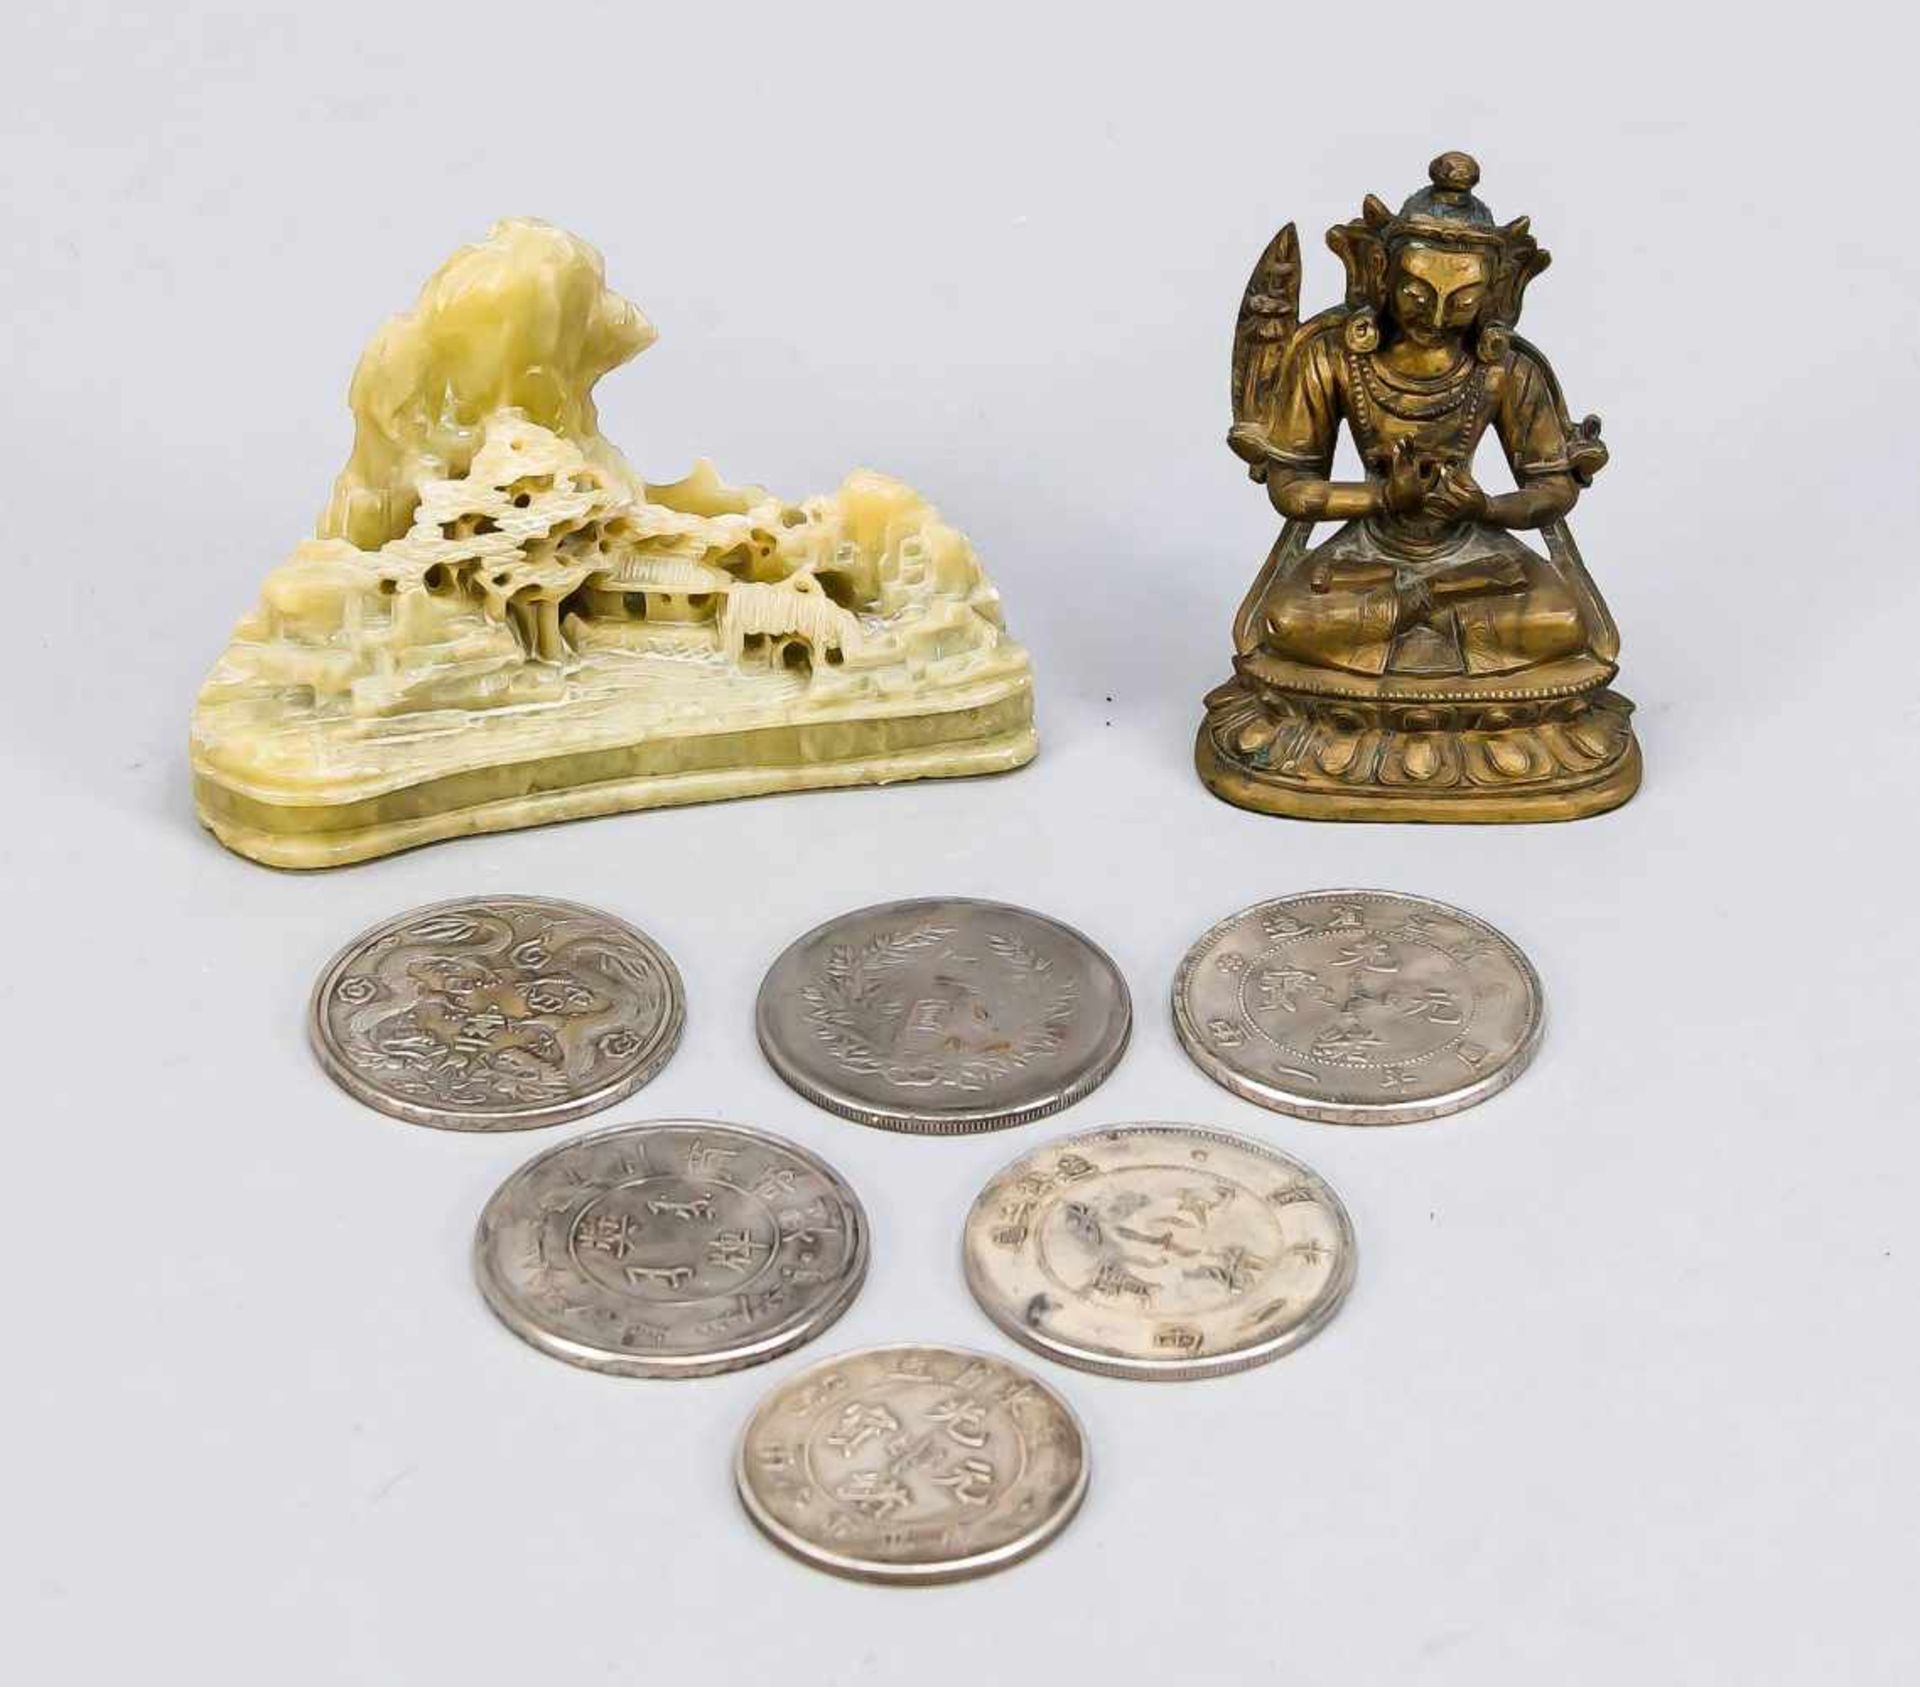 Kleines Konvolut China/Tibet, 19./20. Jh., bestehend aus einer kleinen Bronzefigur desBuddha